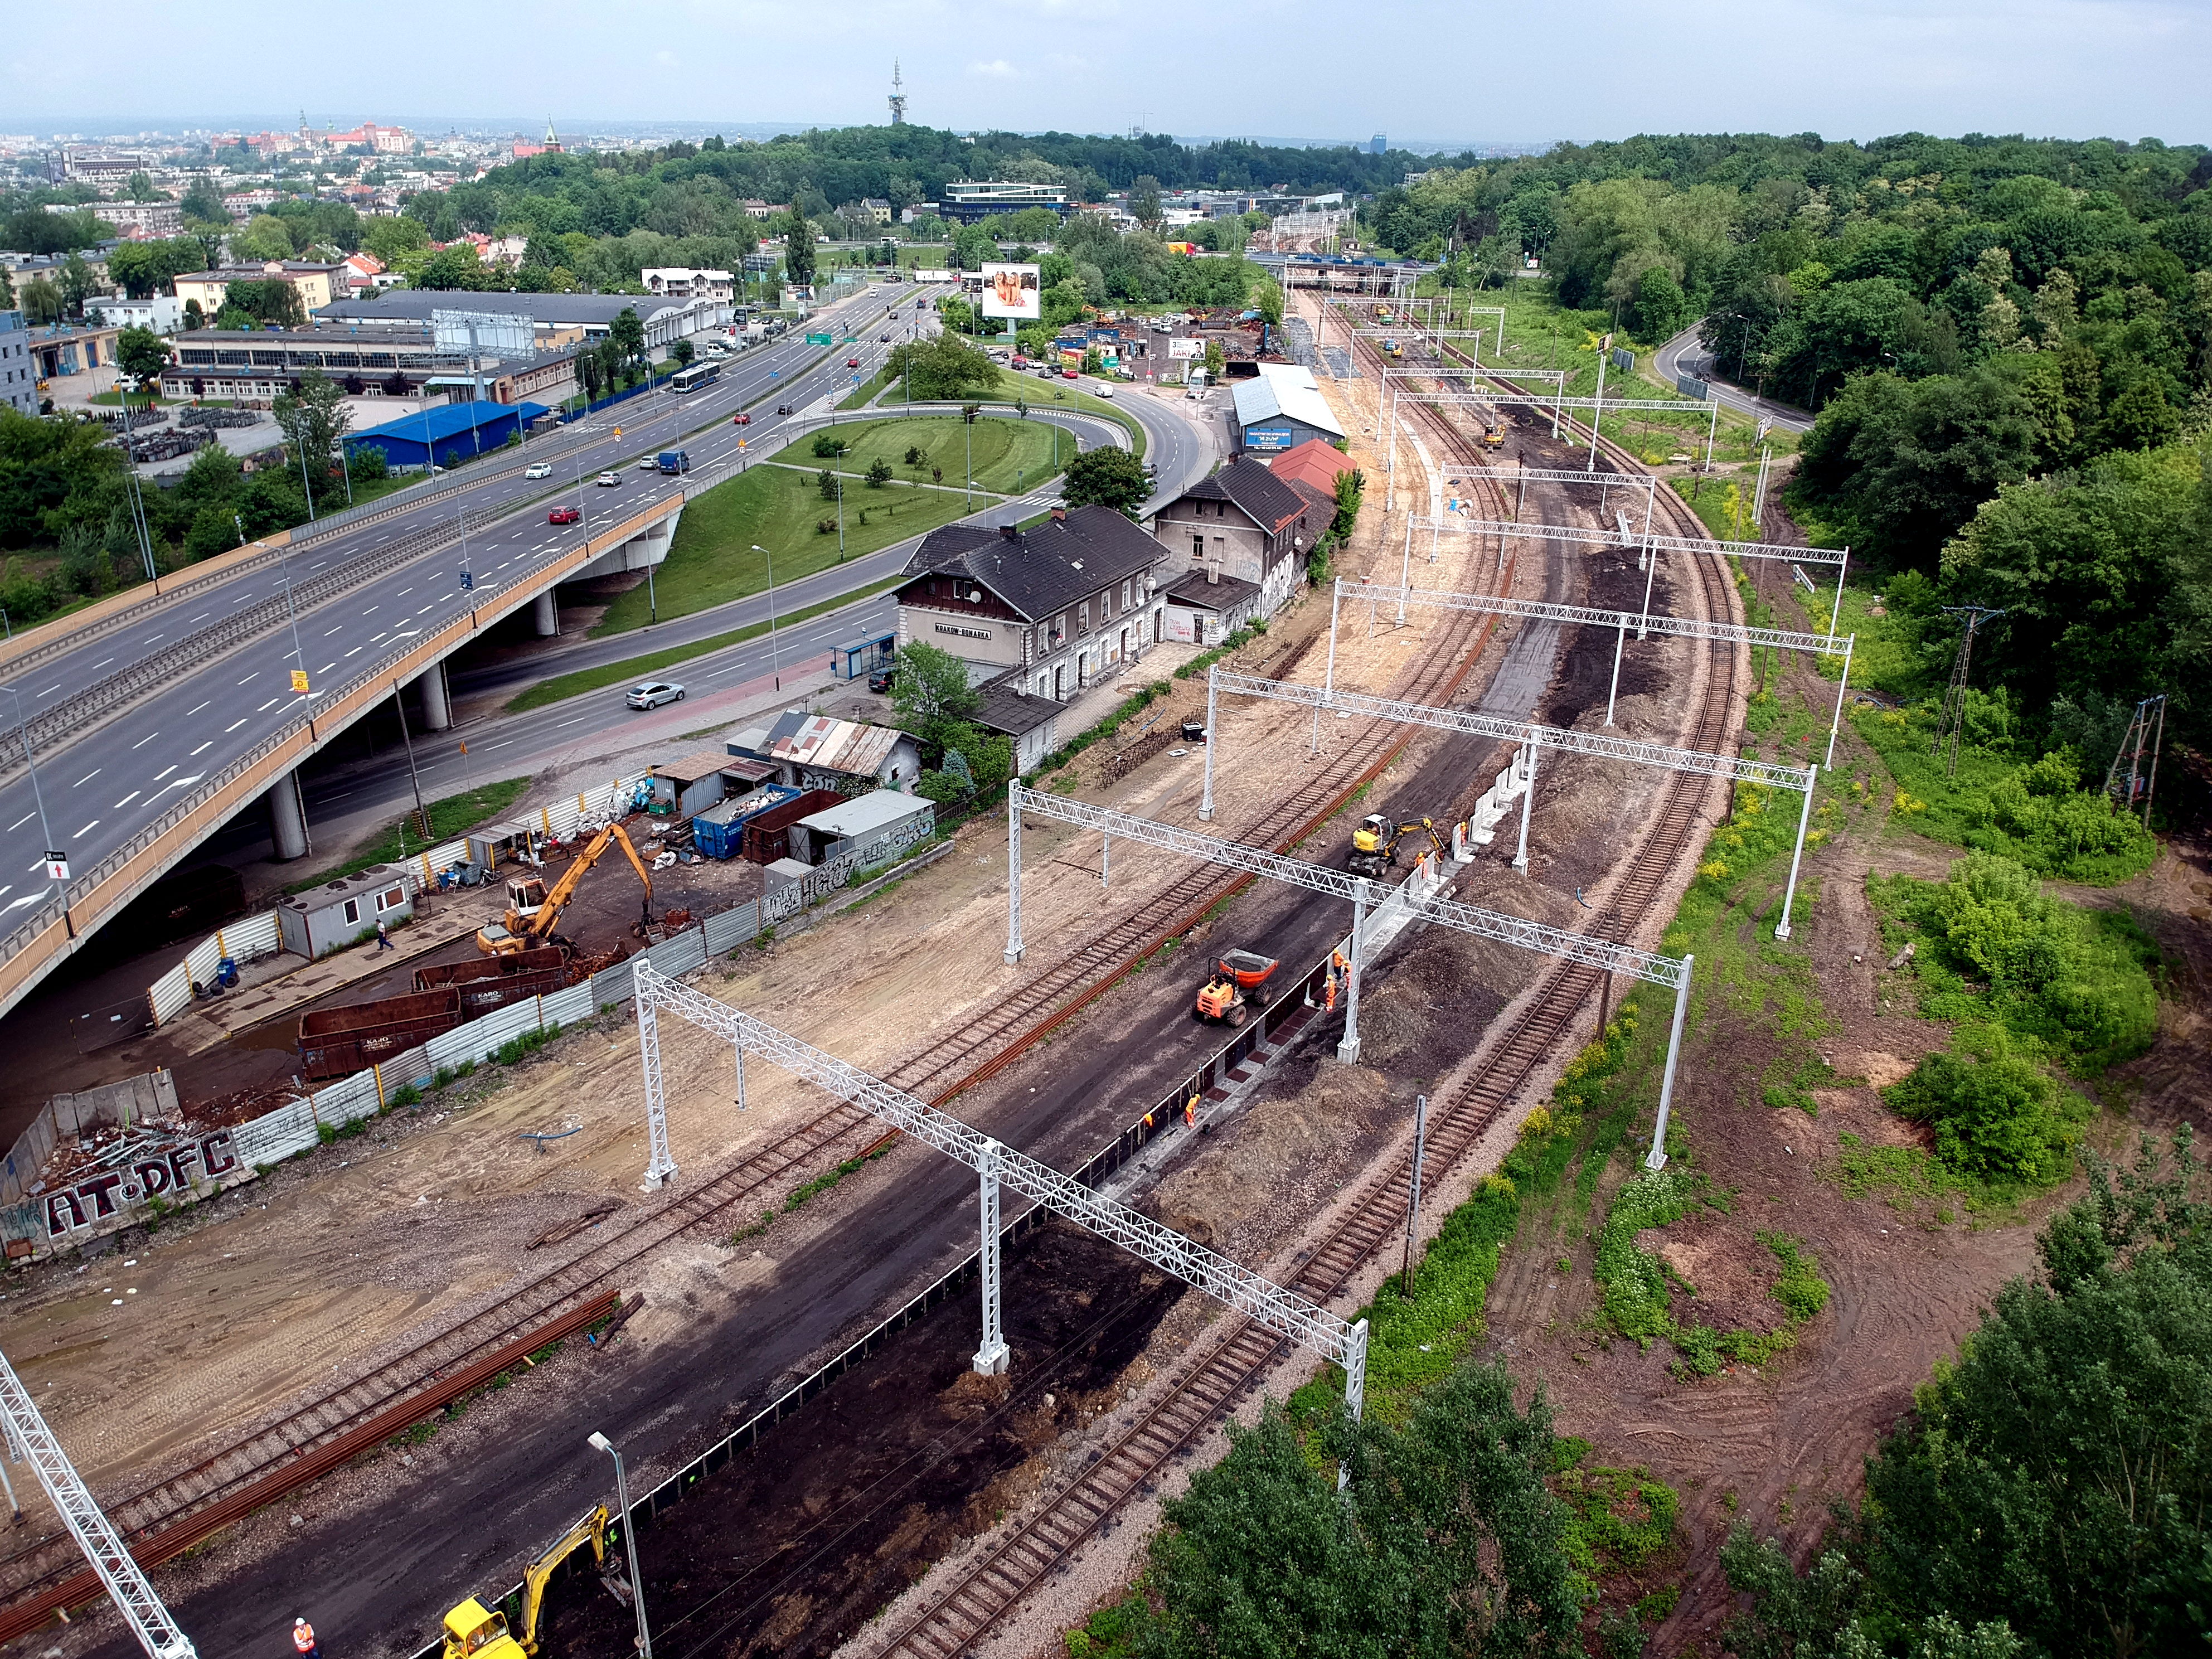 Prace budowlane na torze kolejowym, Kraków - Vasútépítés